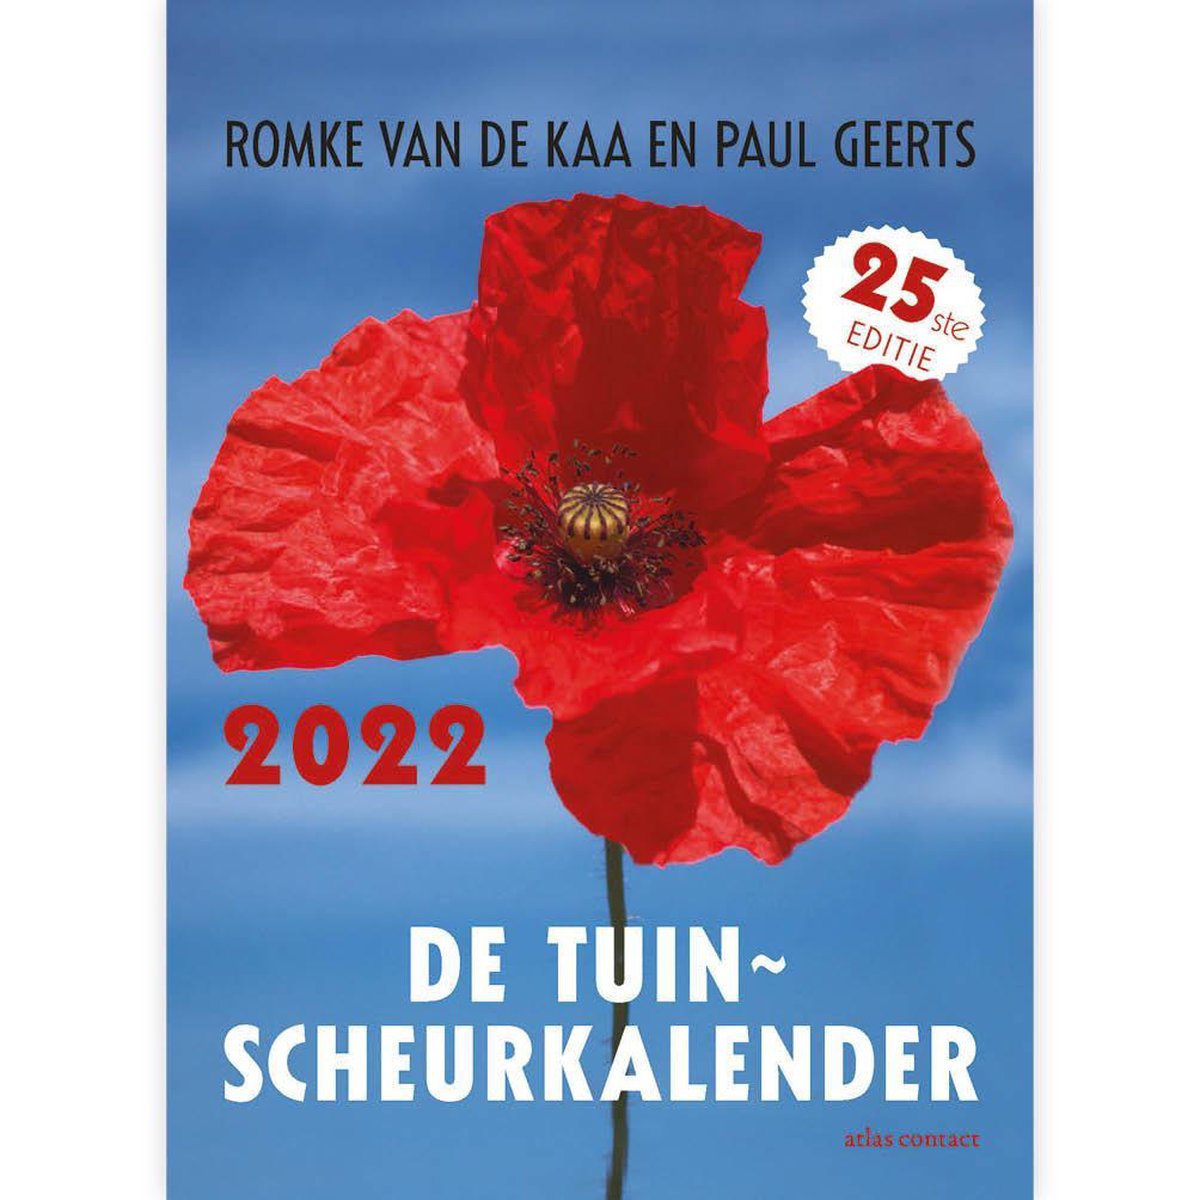 Scheurkalender - 2022 - Tuinscheurkalender - 13x18cm - Romke van de Kaa en Paul Geerts